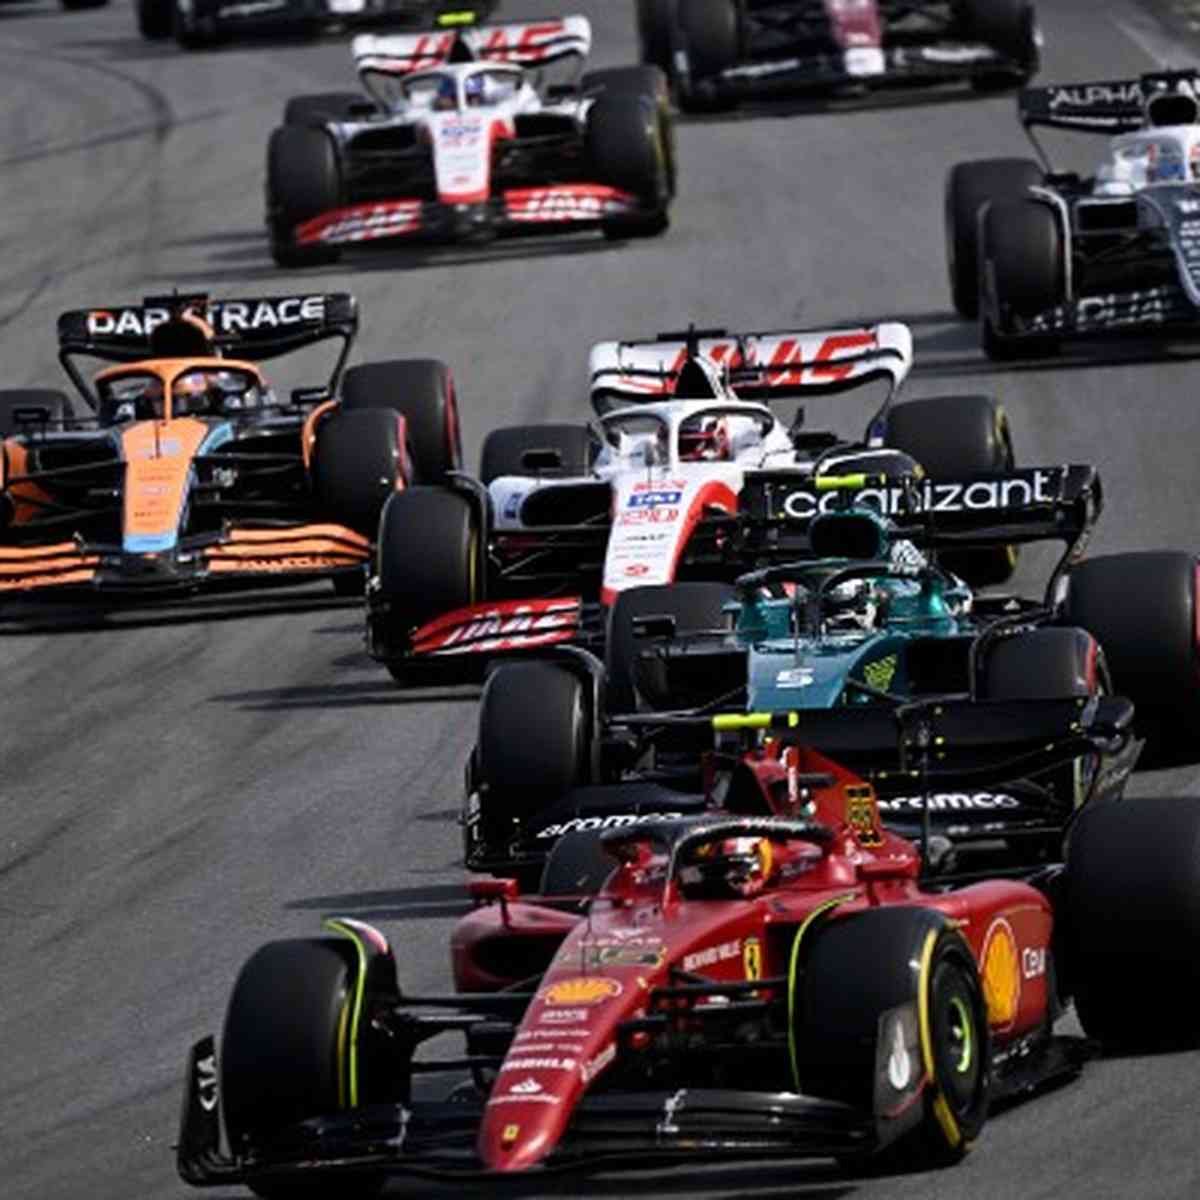 Calendário do Campeonato Mundial de Fórmula 1 da FIA 2023 é